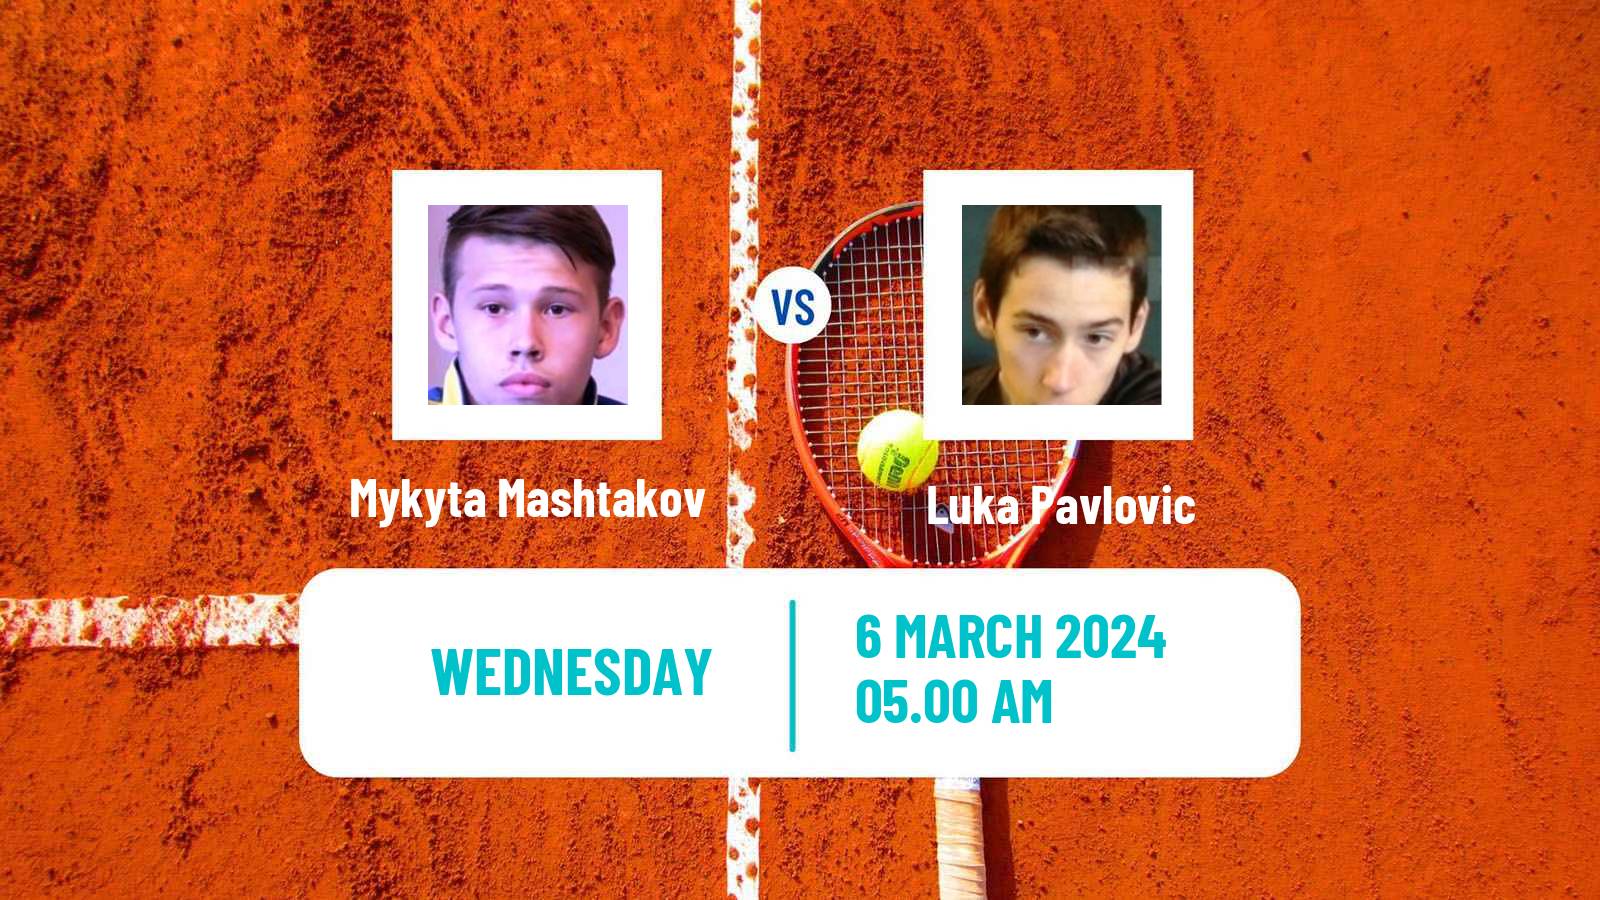 Tennis ITF M15 Porec Men Mykyta Mashtakov - Luka Pavlovic